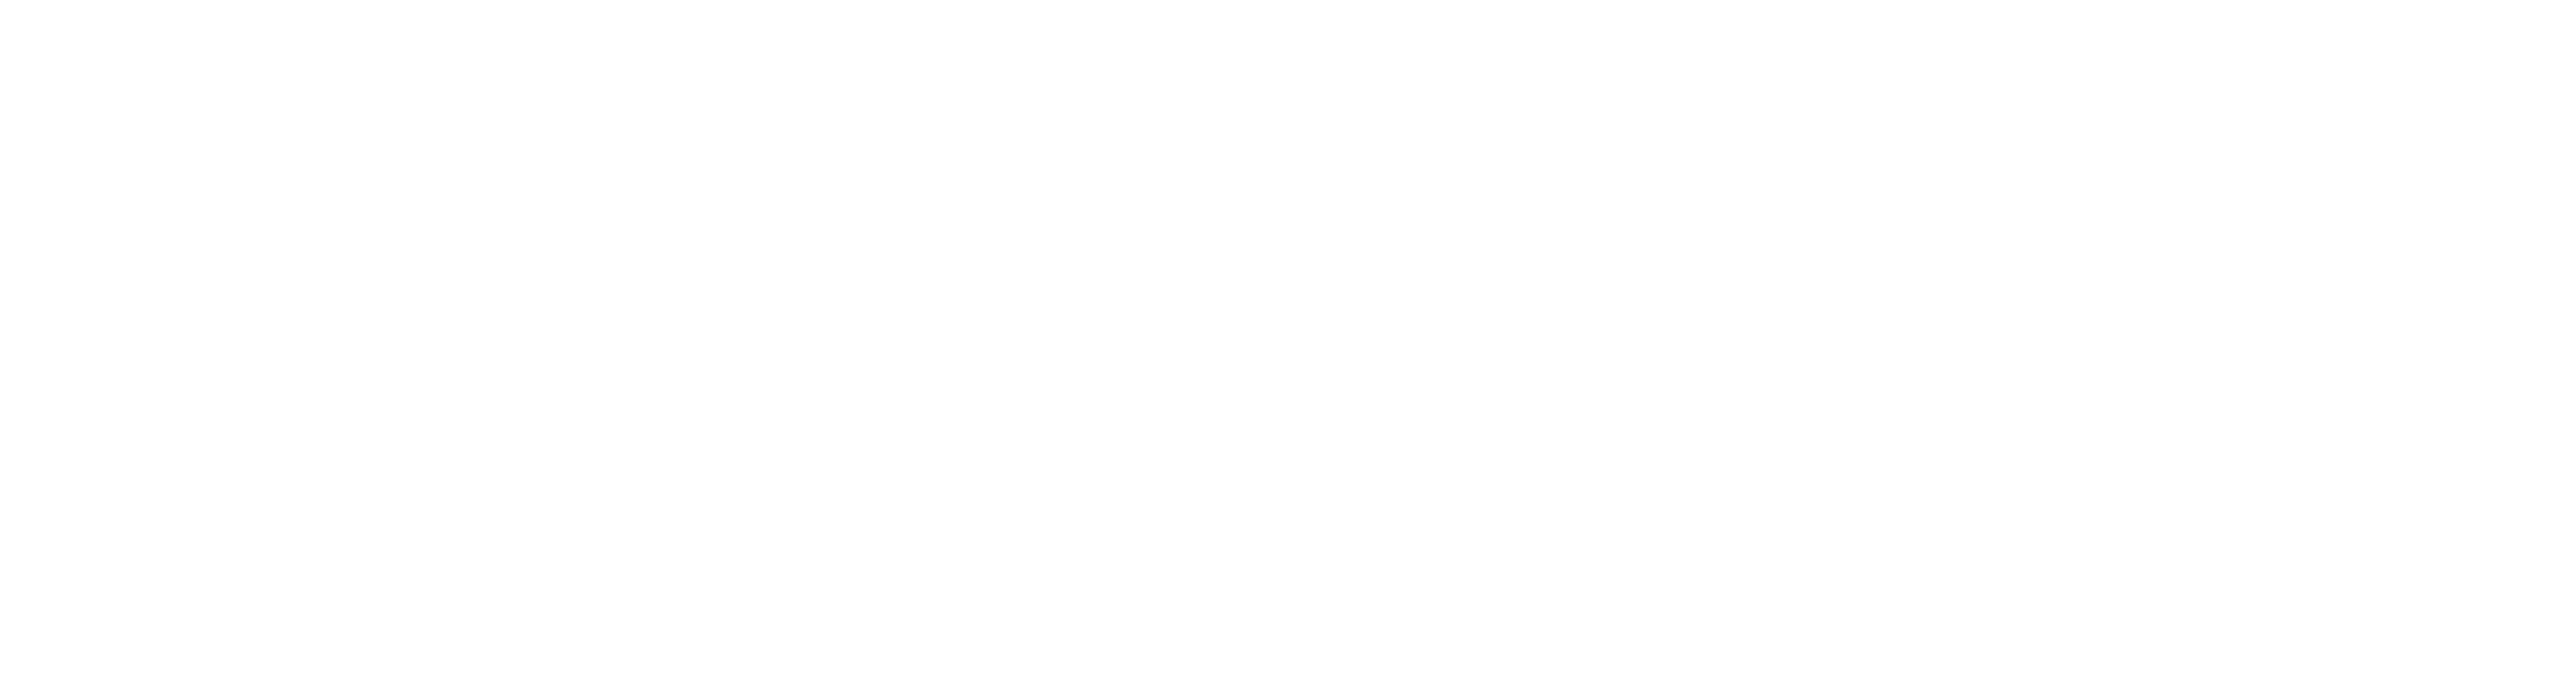 Vector estrellas de la Unión Europea y un texto que dice "Financiado por la Unión Europea NextGenerationEU"